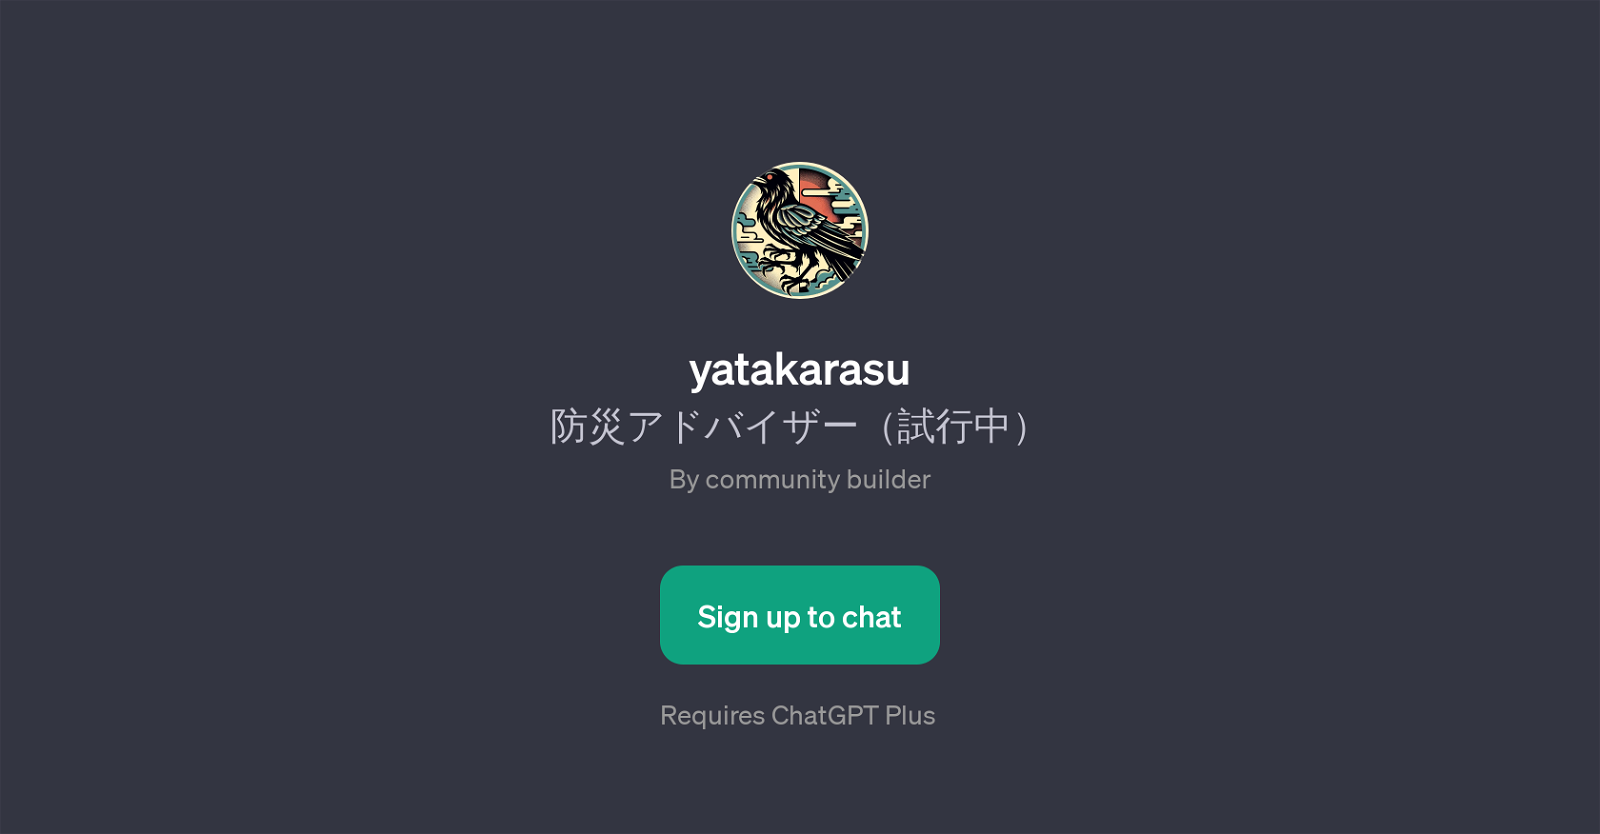 yatakarasu website